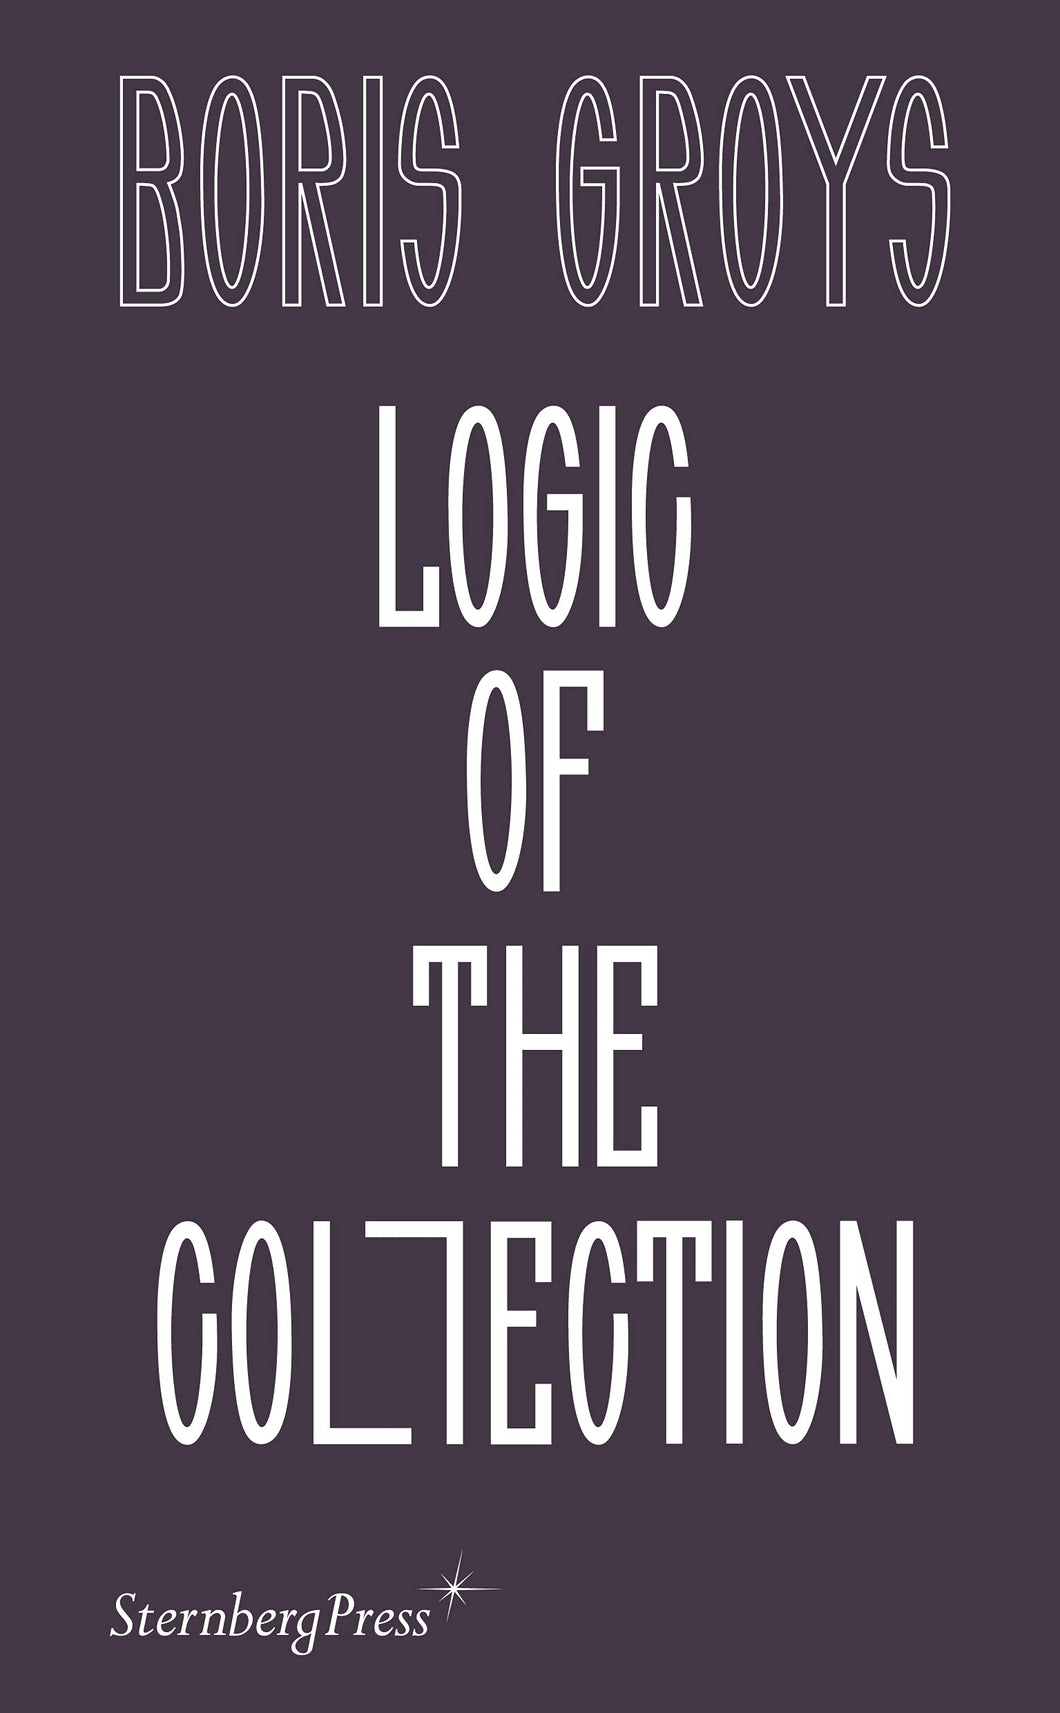 Logic of the Collection ร้านหนังสือและสิ่งของ เป็นร้านหนังสือภาษาอังกฤษหายาก และร้านกาแฟ หรือ บุ๊คคาเฟ่ ตั้งอยู่สุขุมวิท กรุงเทพ